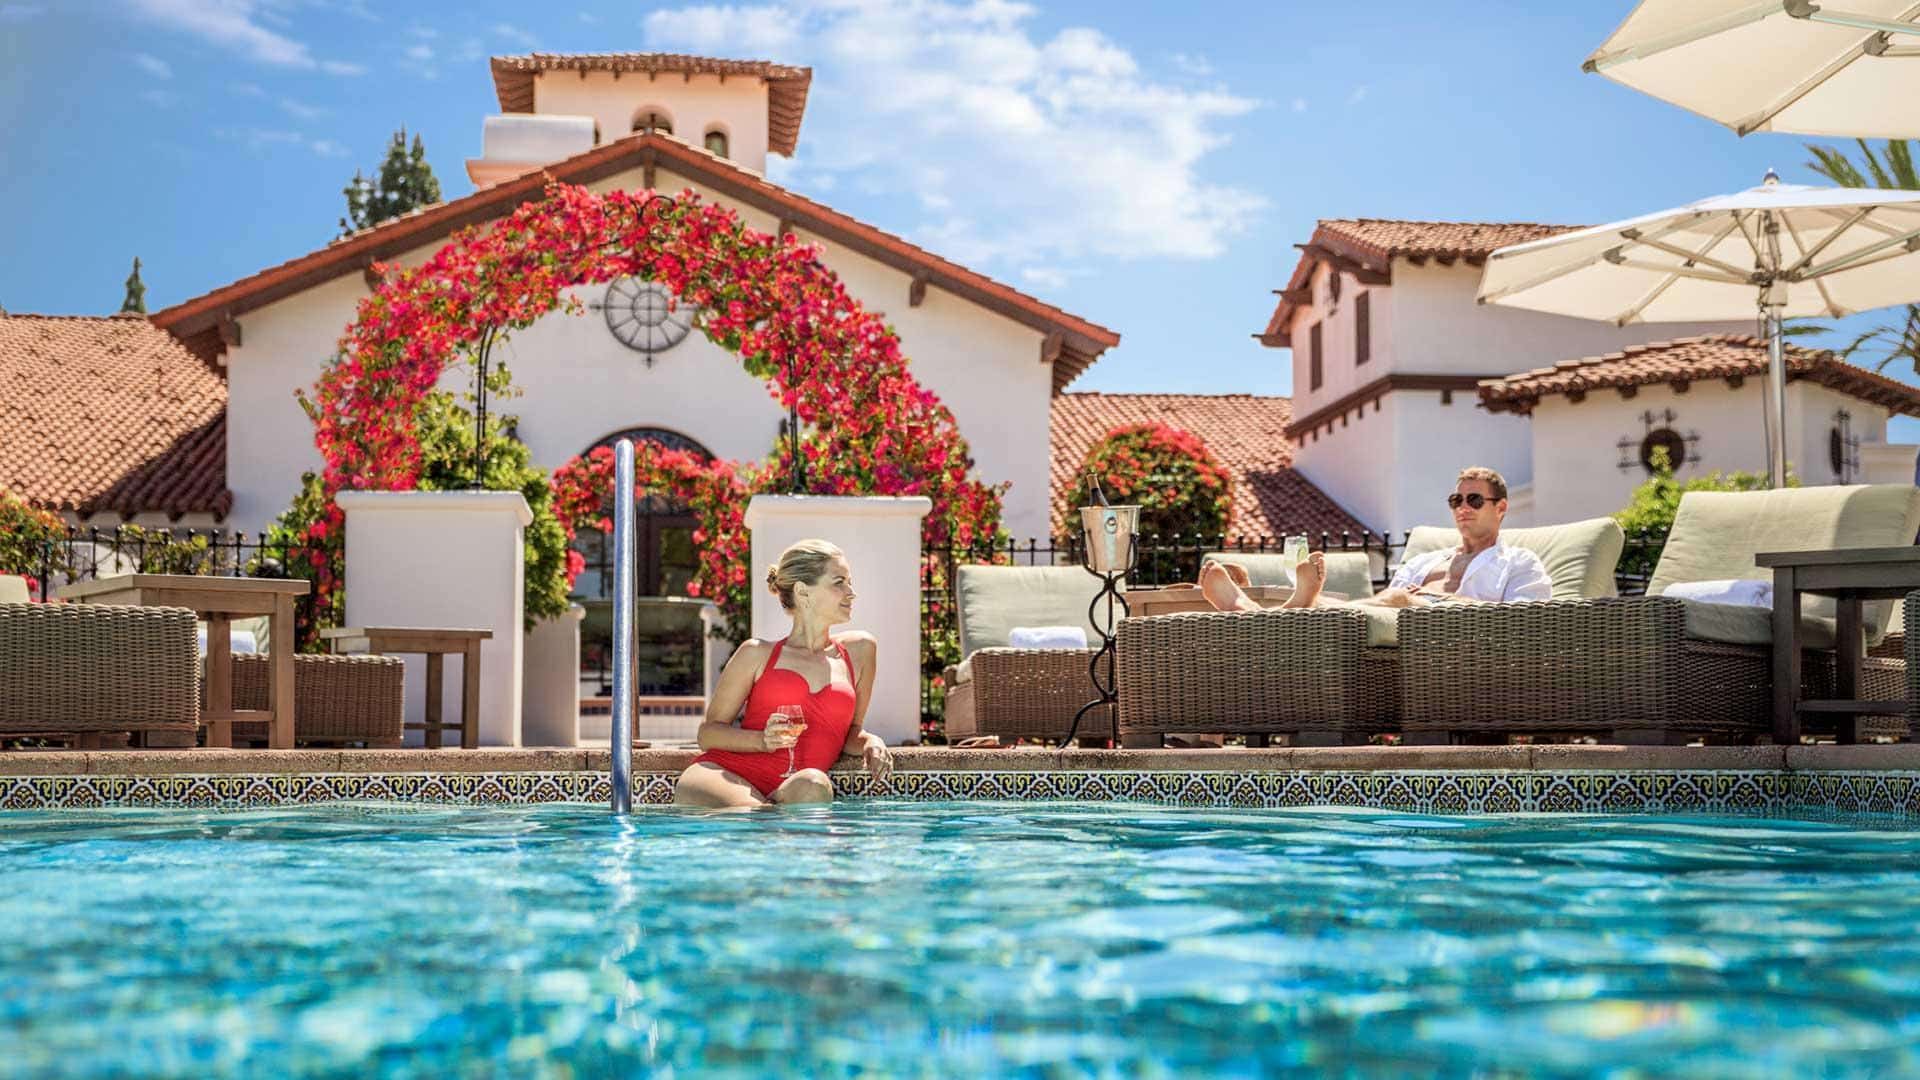 La Costa #1 Resort Spa In Southern California